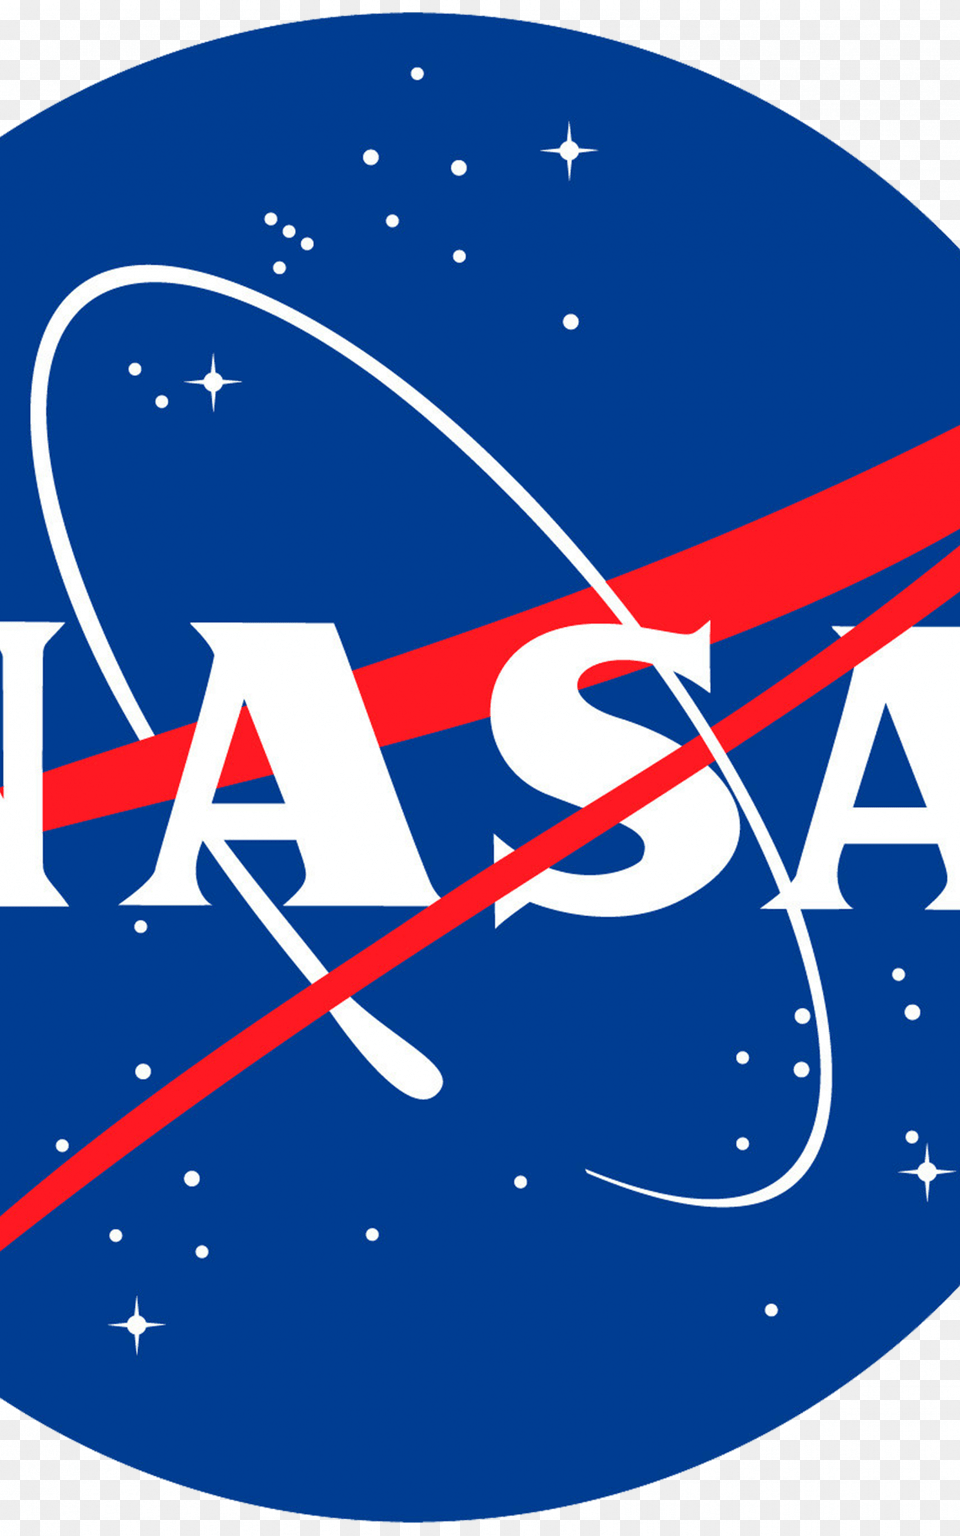 Nasa Logo Wallpaper Nasa Logo Badge 1 Inch 25mm Novelty Gift Space, Aircraft, Airplane, Transportation, Vehicle Free Transparent Png